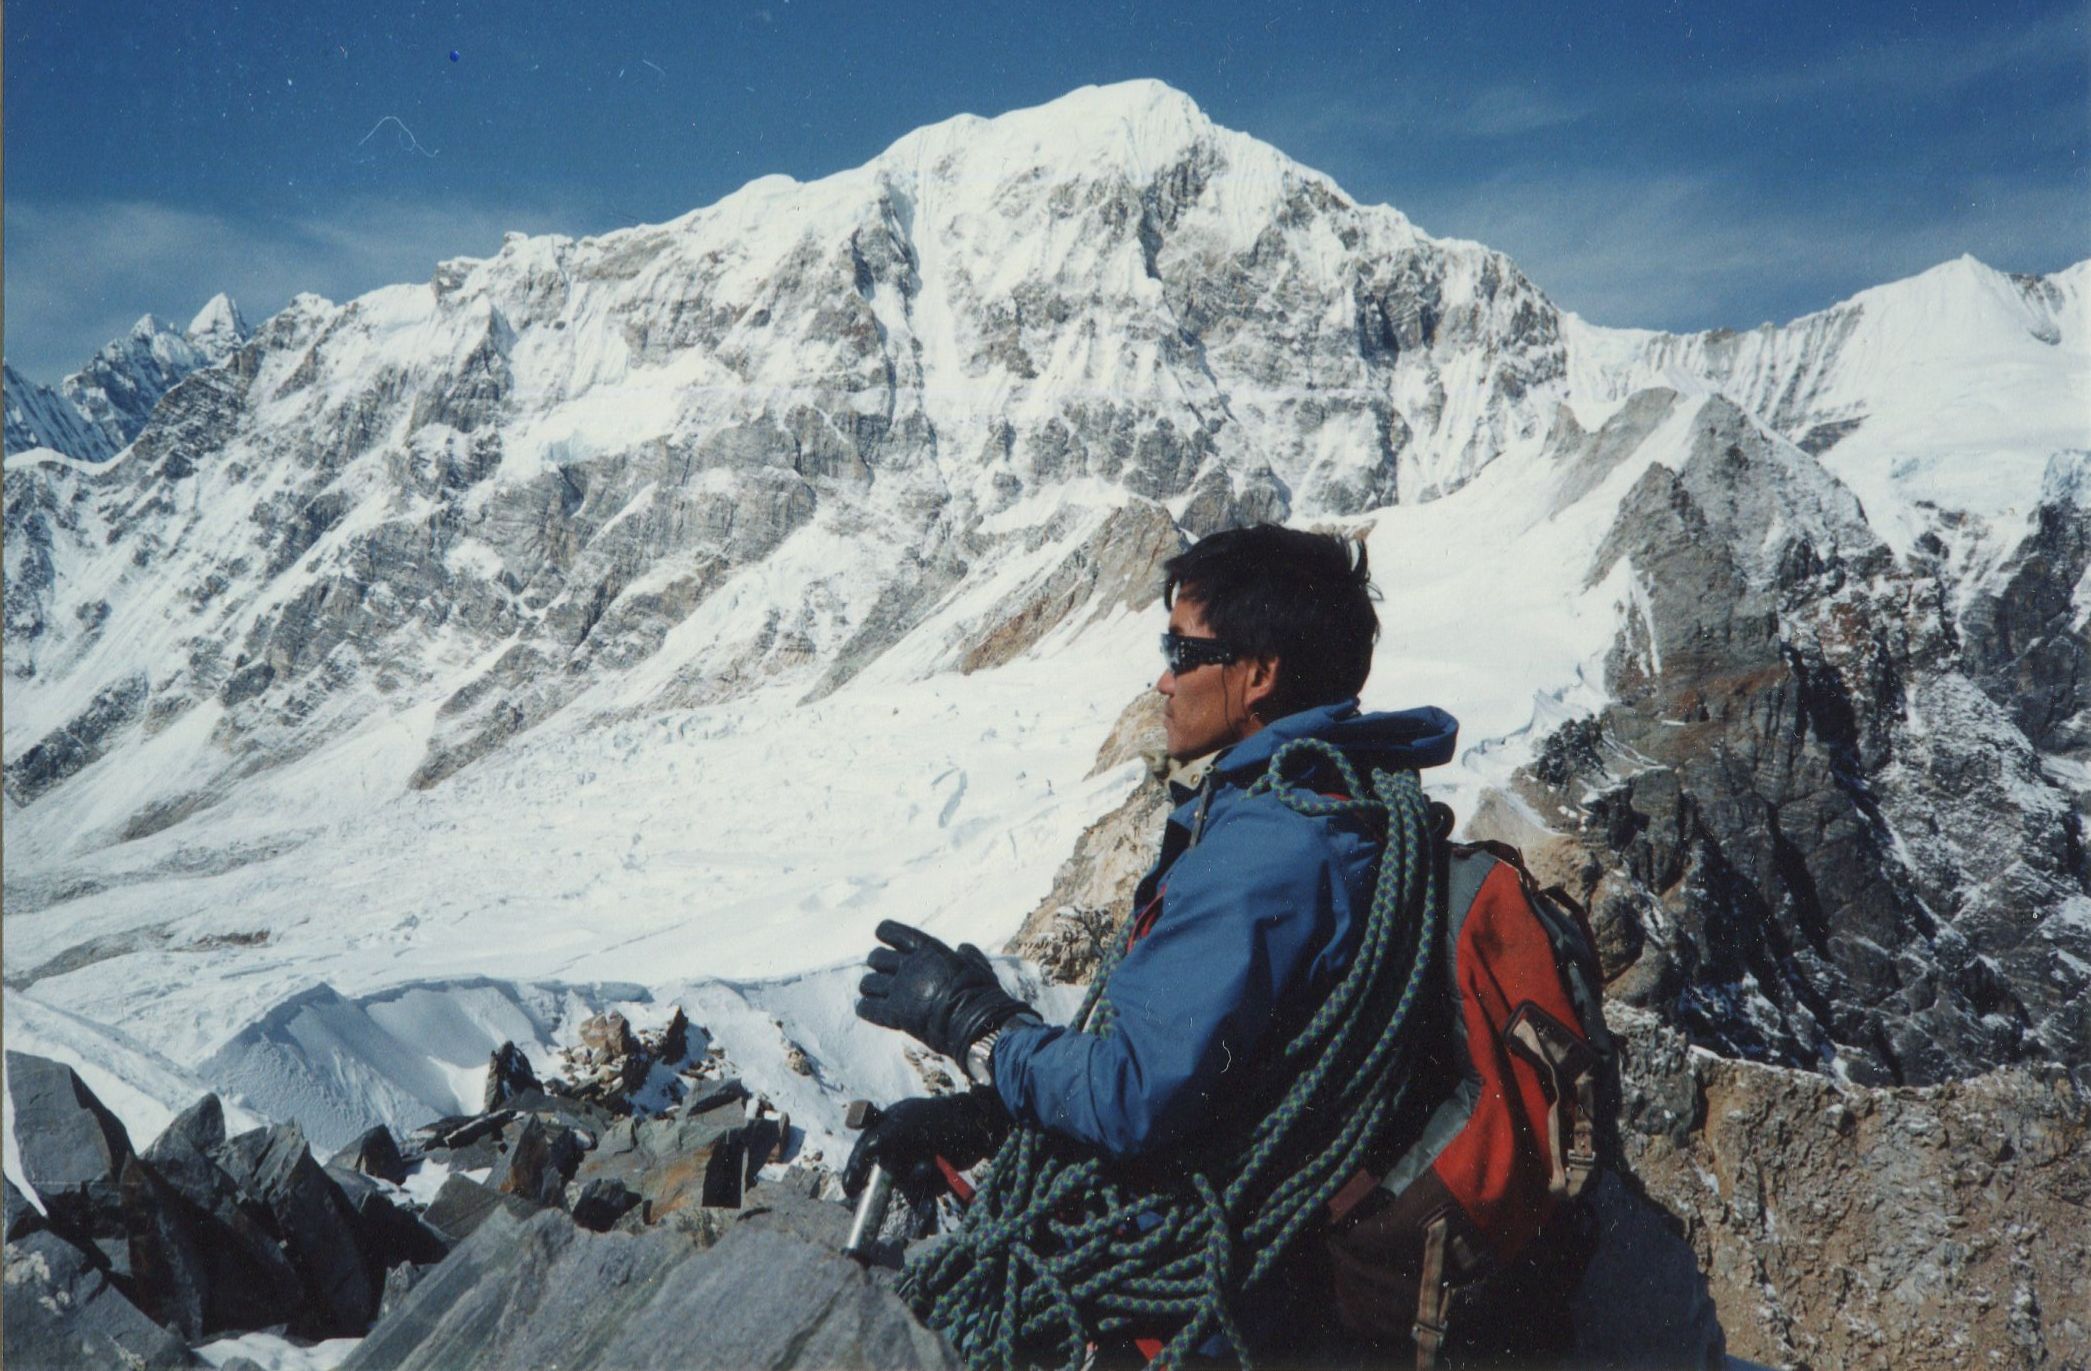 Nima Gyalzen Sherpa on summit of Yala Peak with Shalbachum in background